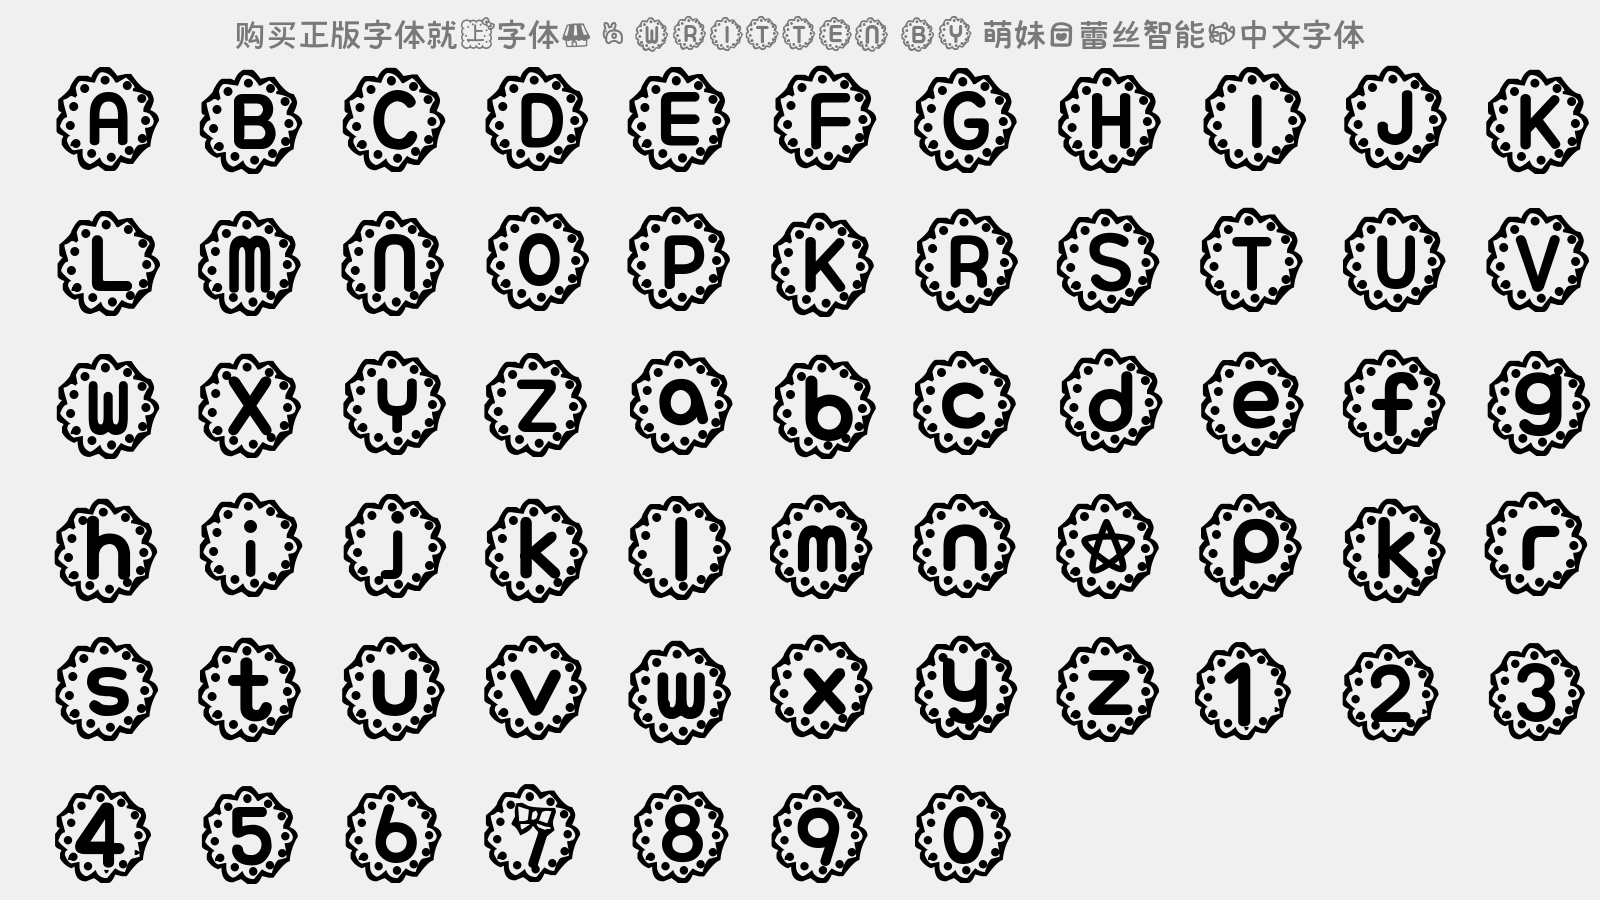 萌妹爱蕾丝智能机中文字体 - 大写字母/小写字母/数字